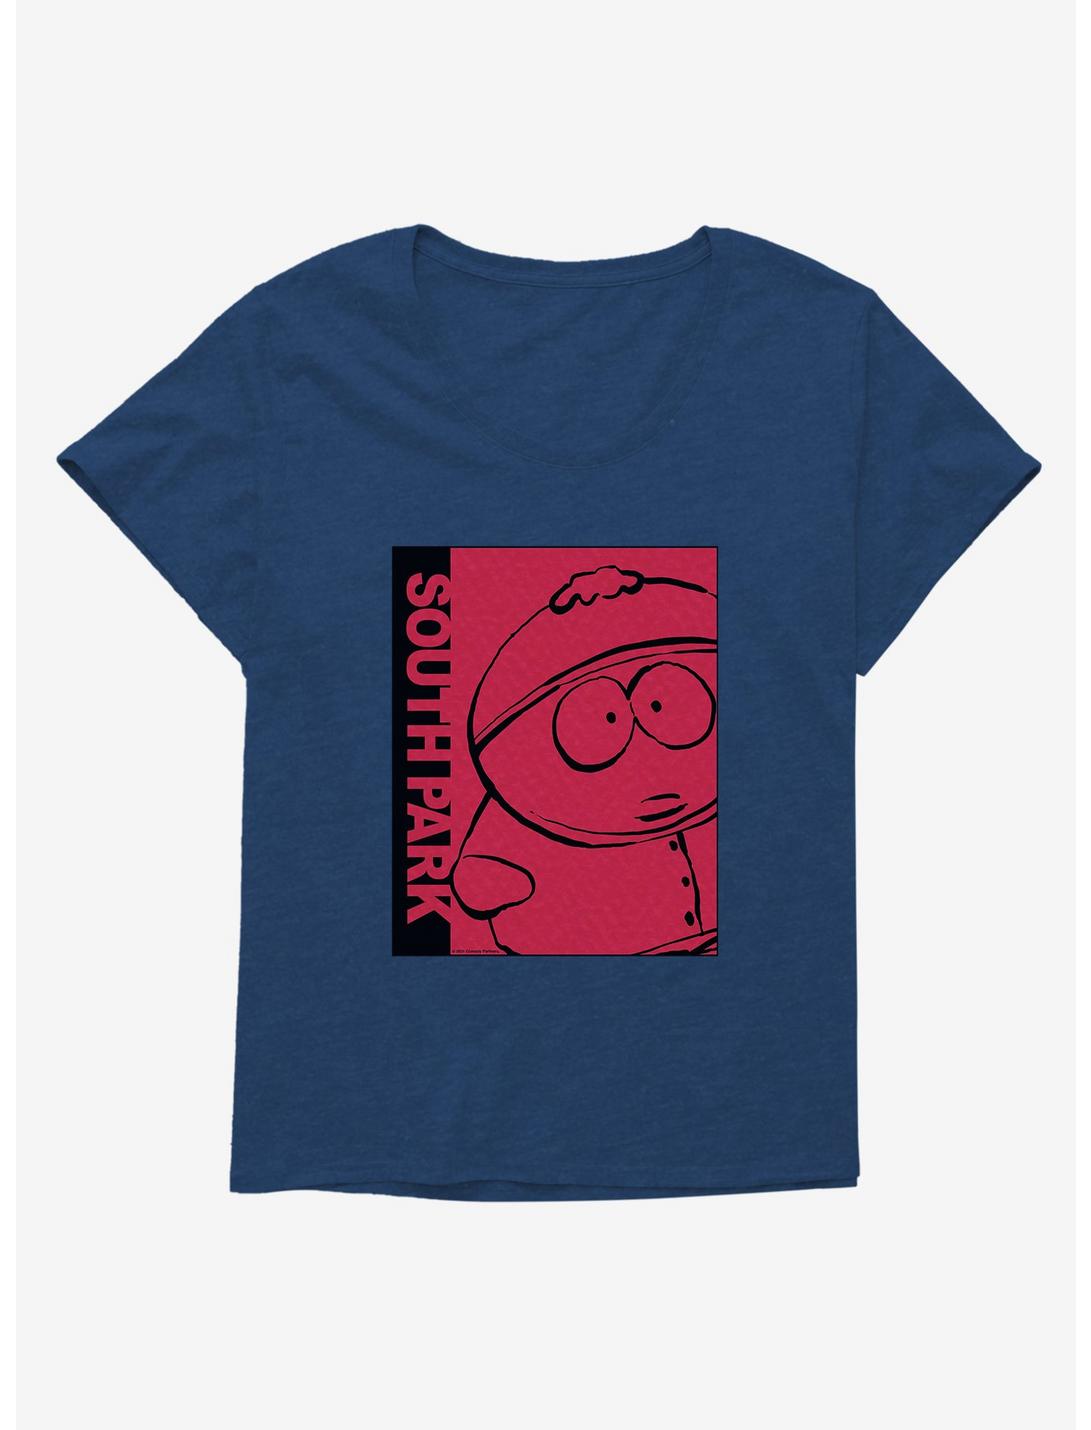 South Park Cartman Girls T-Shirt Plus Size, , hi-res